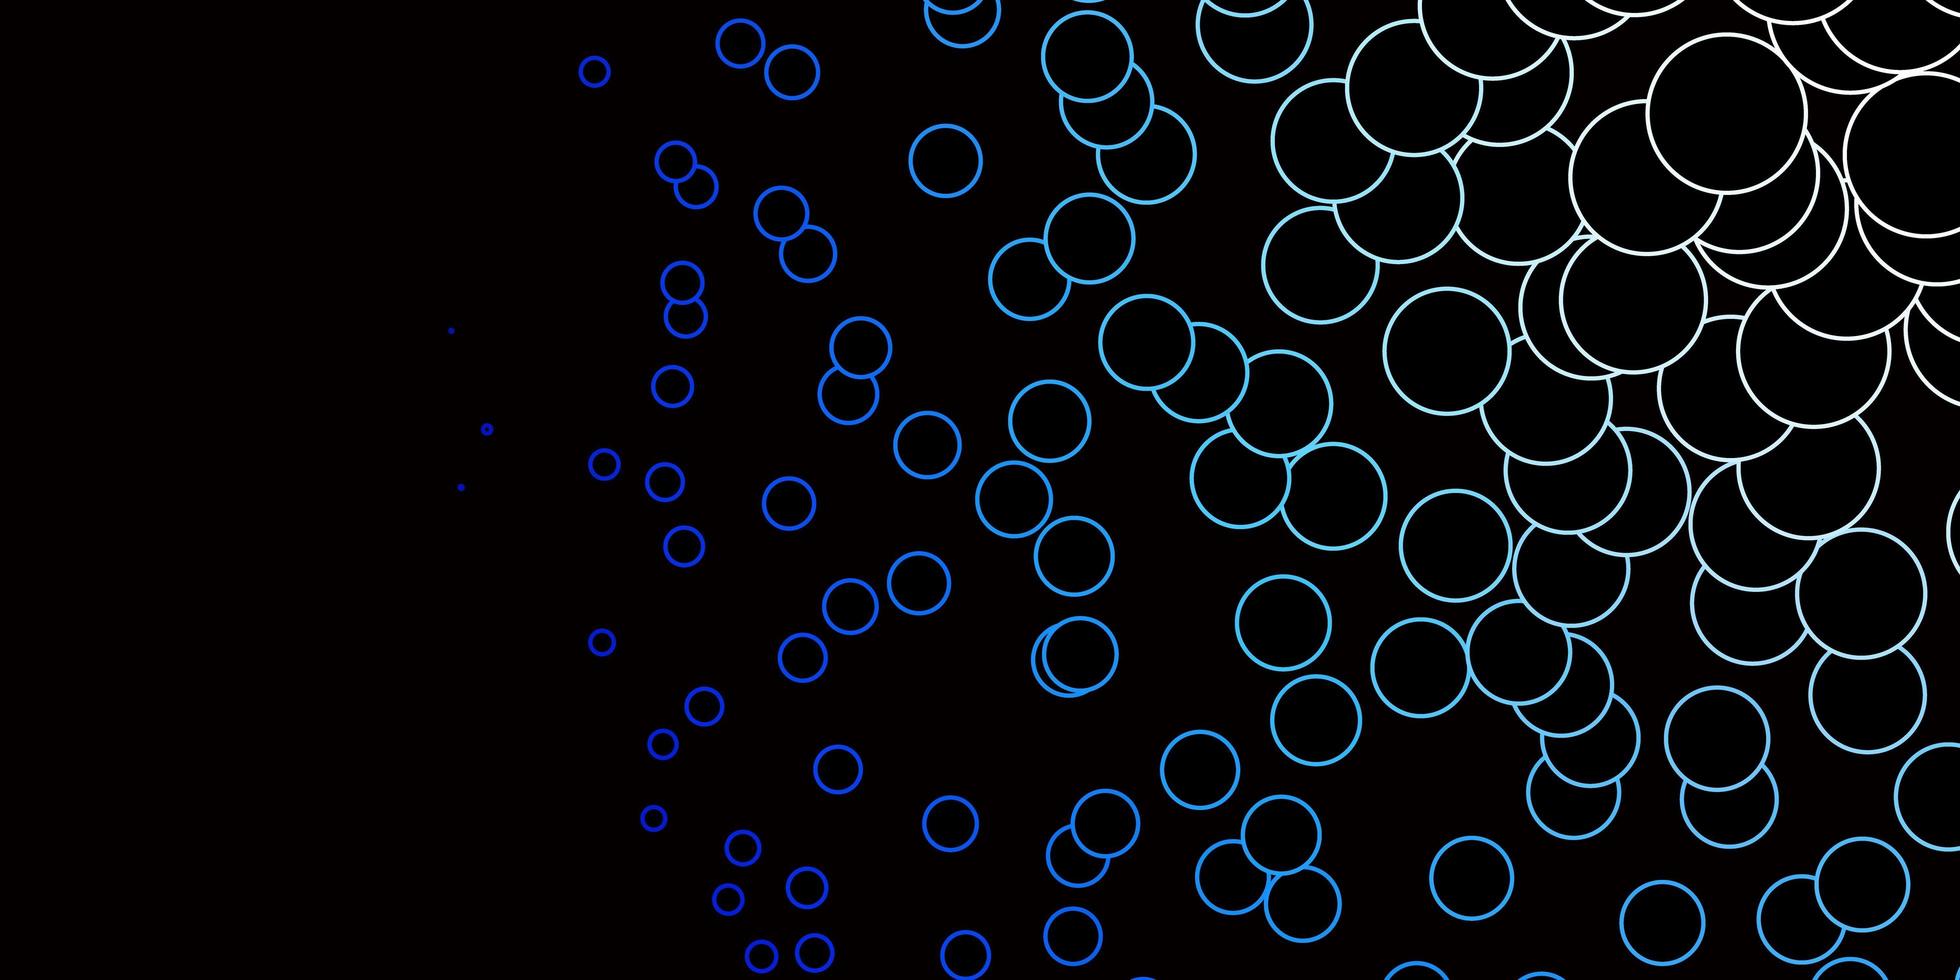 padrão de vetor azul escuro com círculos